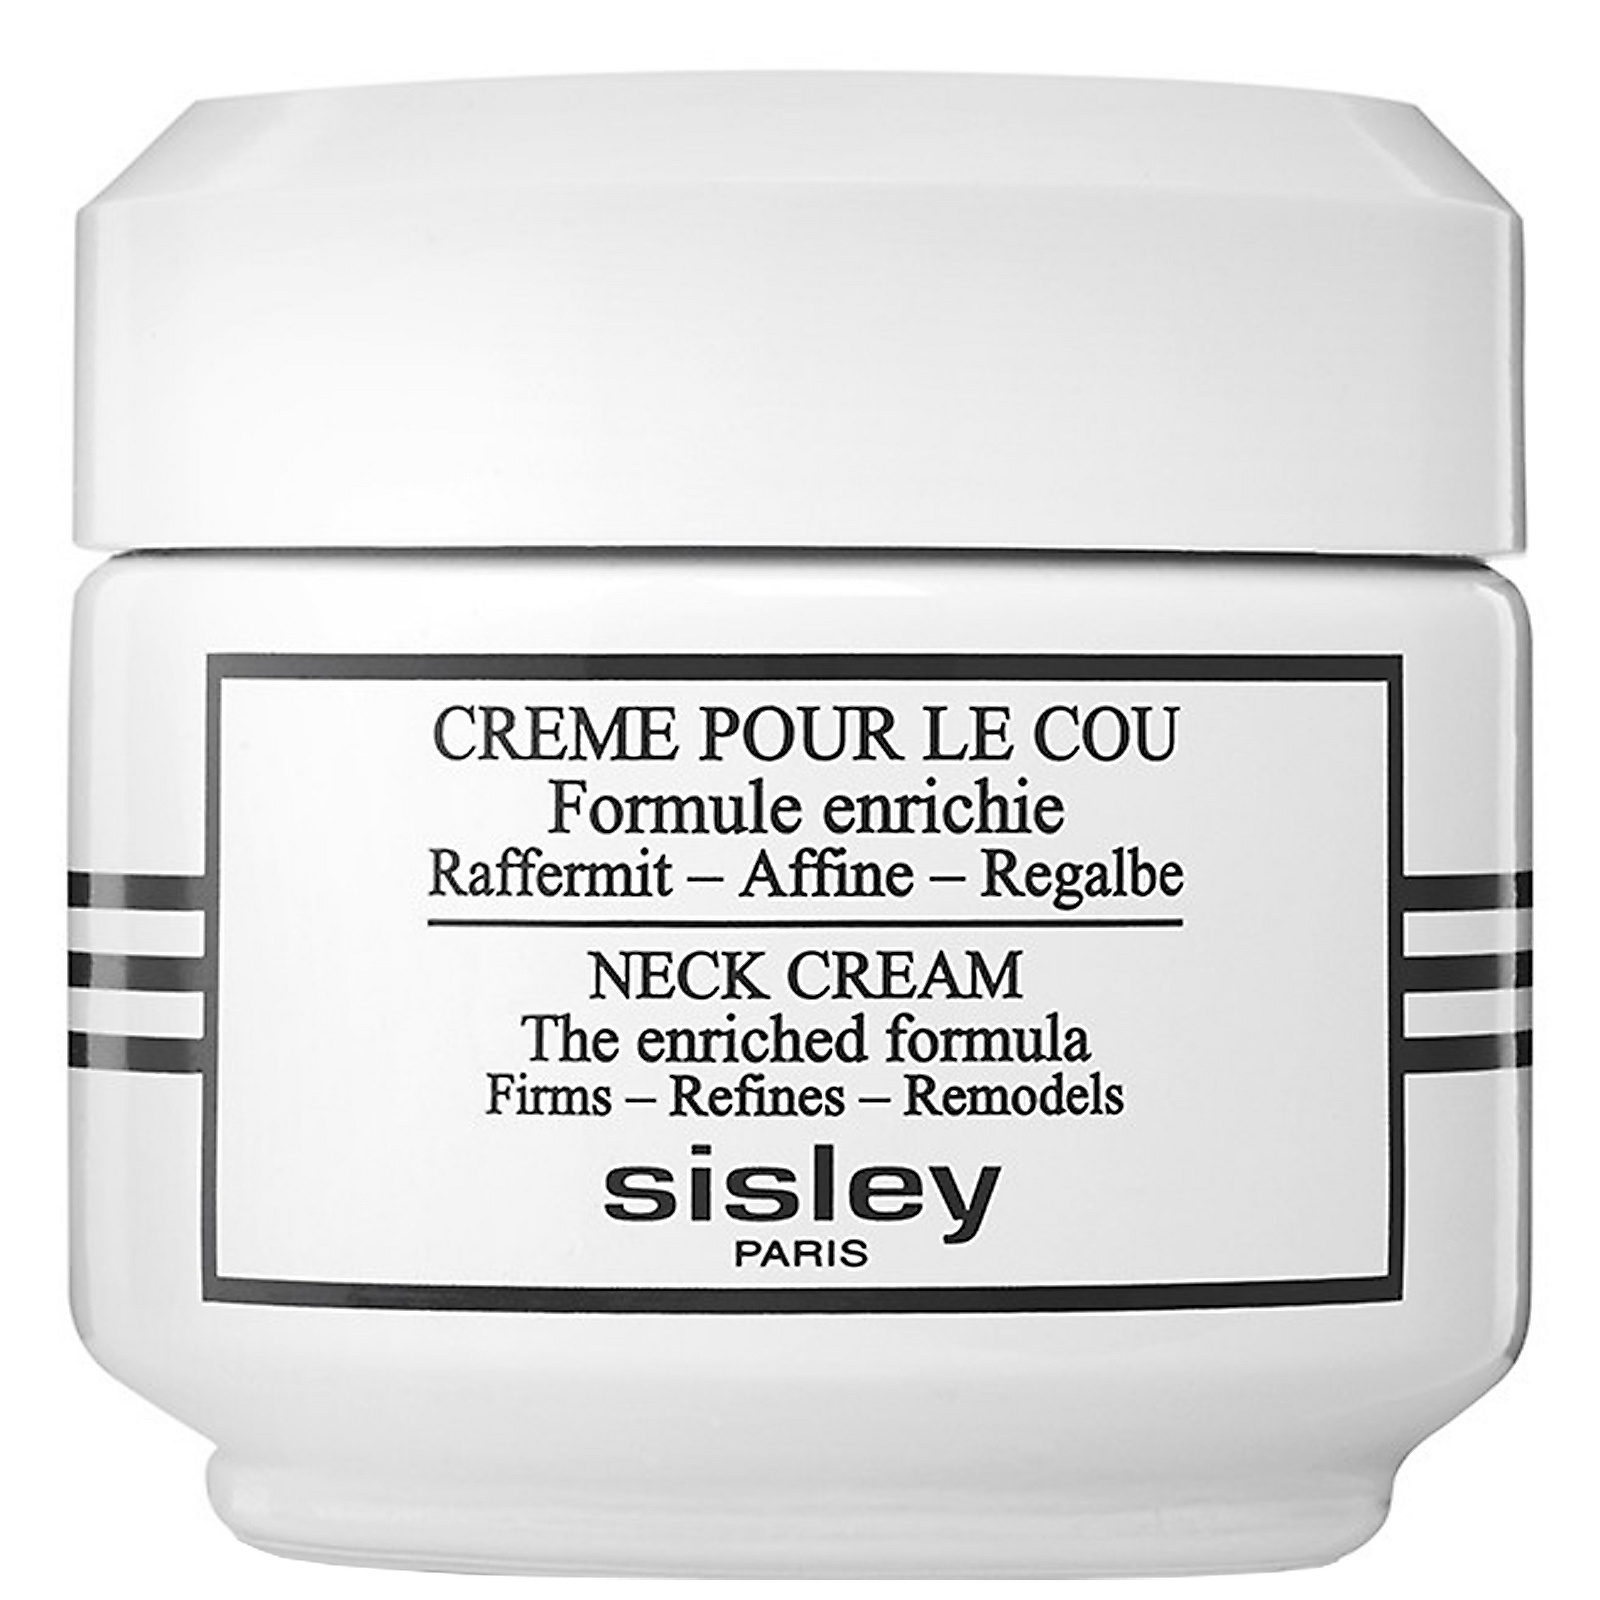 Sisley Neck Cream